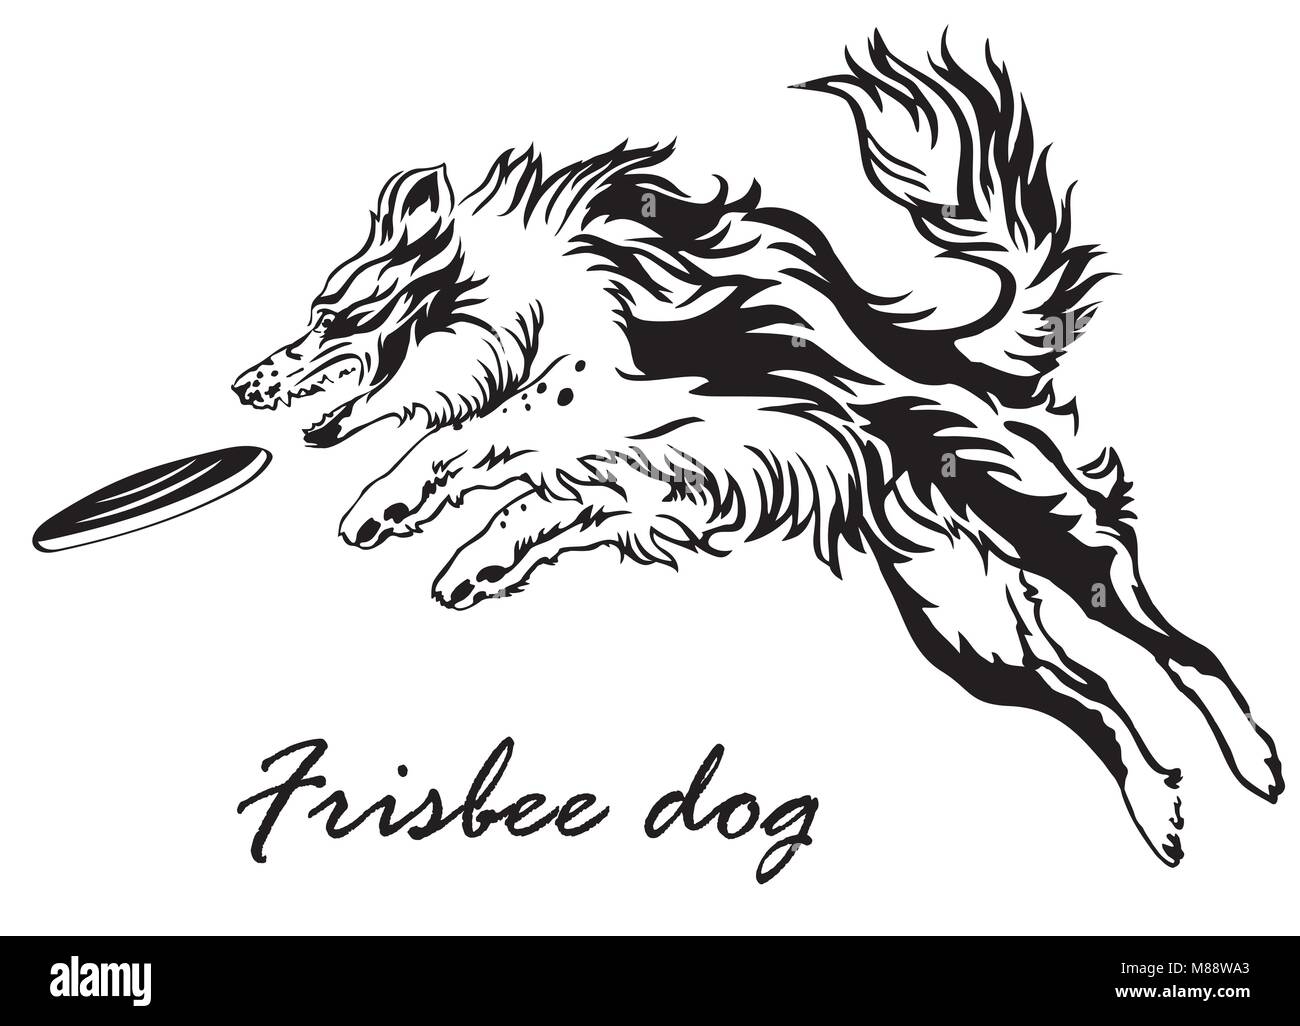 Vector illustration monochrome avec chien (border collie) isolé sur fond blanc. Chien noir et blanc moelleux dans le profil voir sauter et attraper Illustration de Vecteur